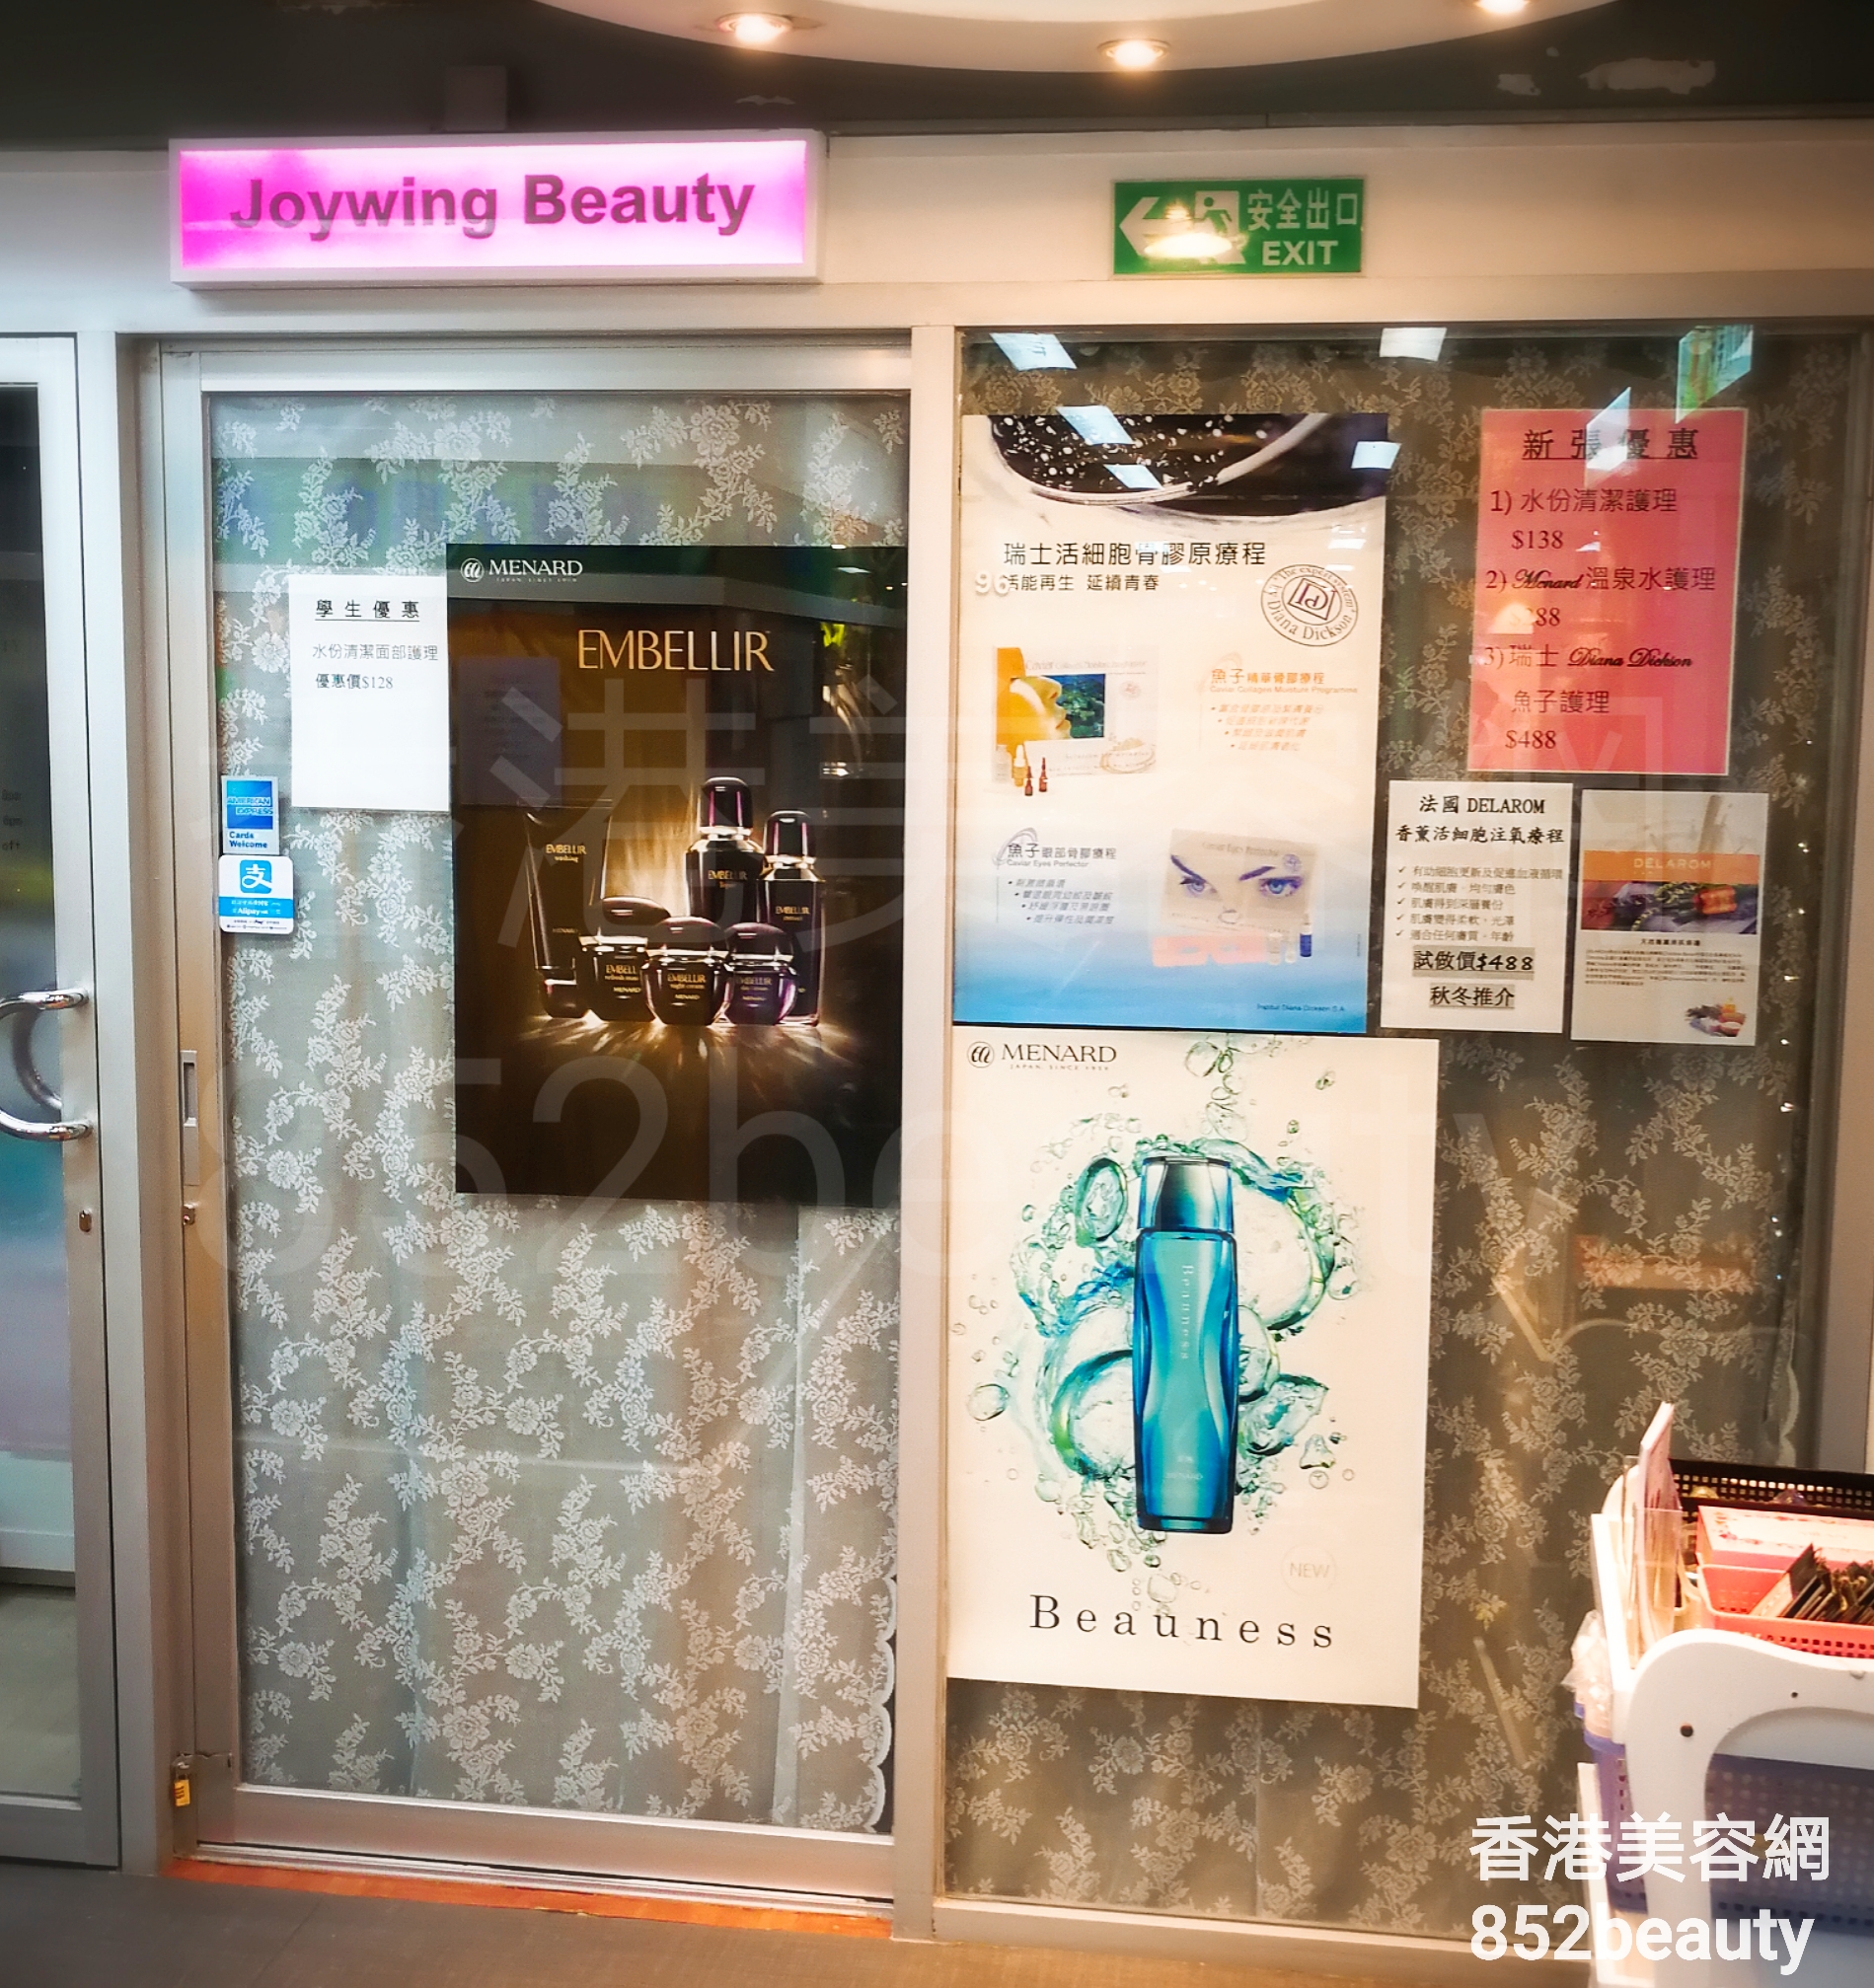 香港美容網 Hong Kong Beauty Salon 美容院 / 美容師: Joywing Beauty 穎儀美容